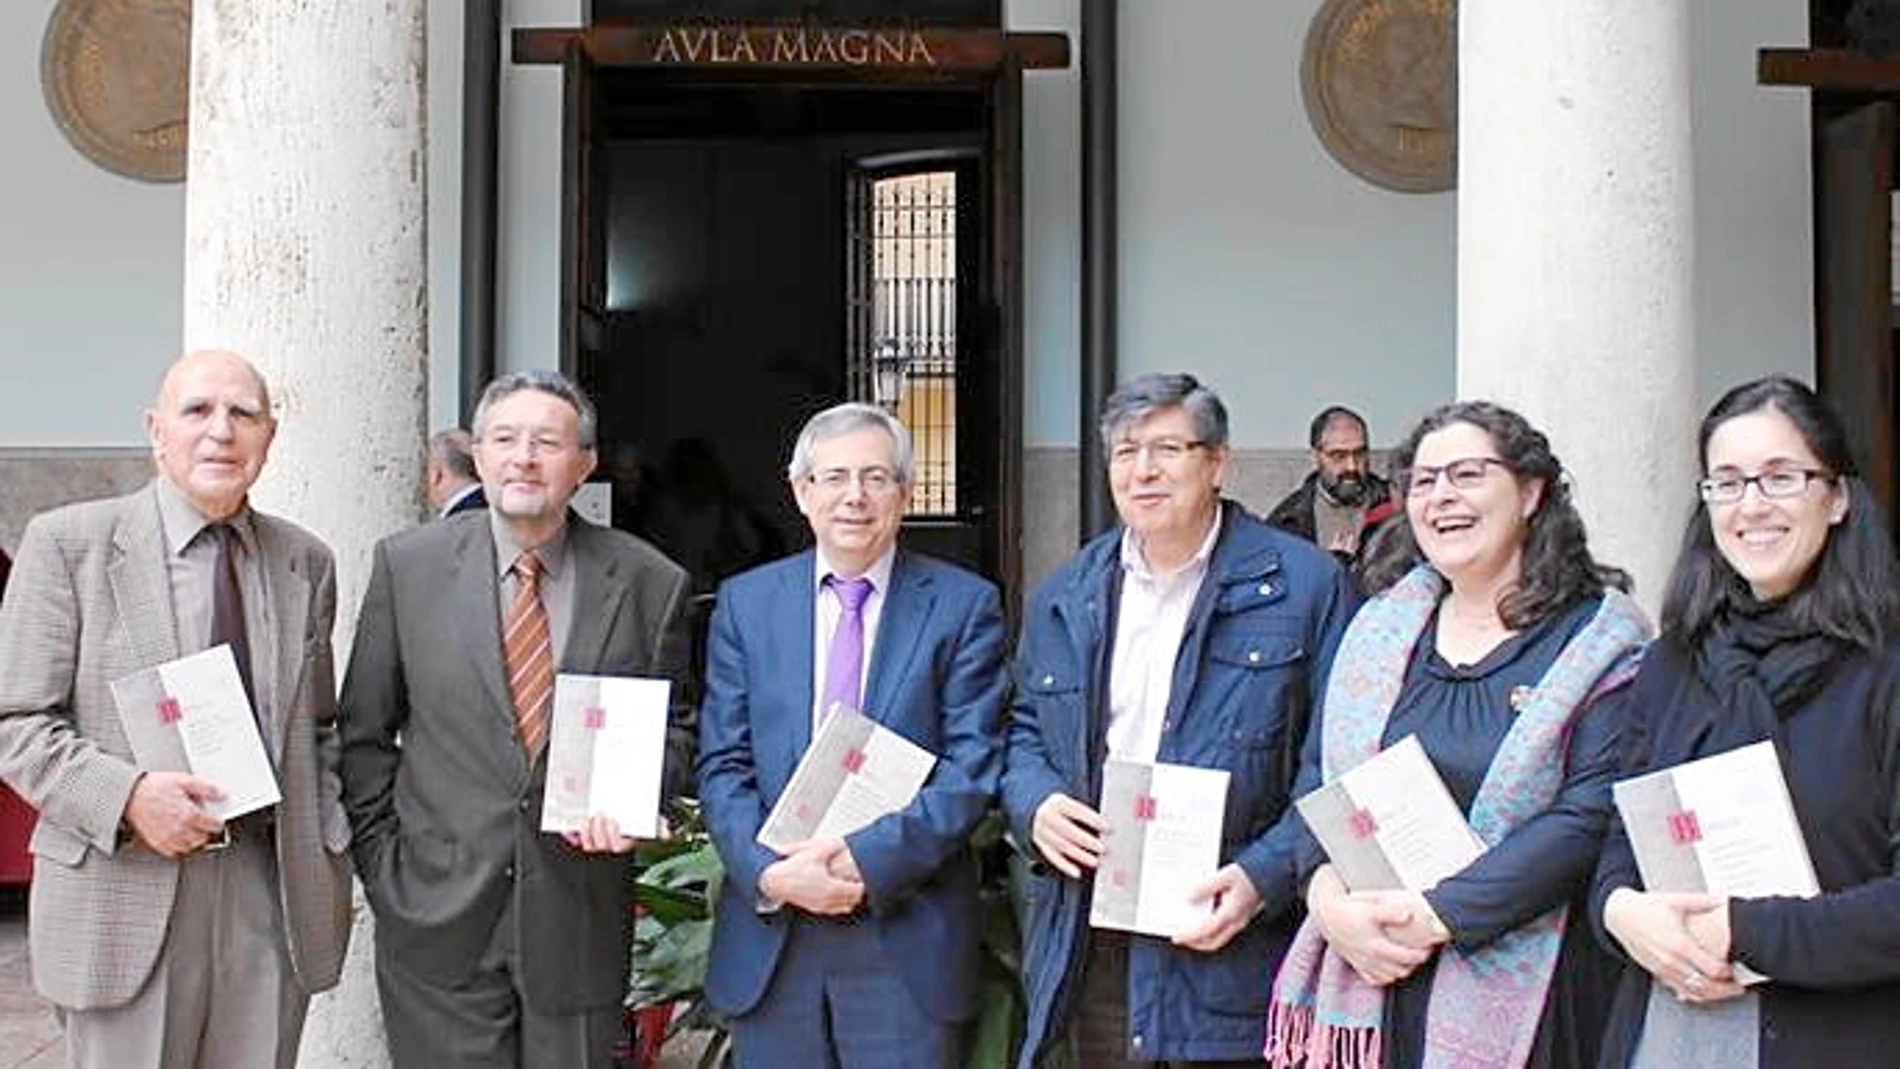 El vicepresidente de la AVL, Josep Palomero, participó ayer en una jornada sobre vocabulario técnico en el Aula Magna de la Universitat de València